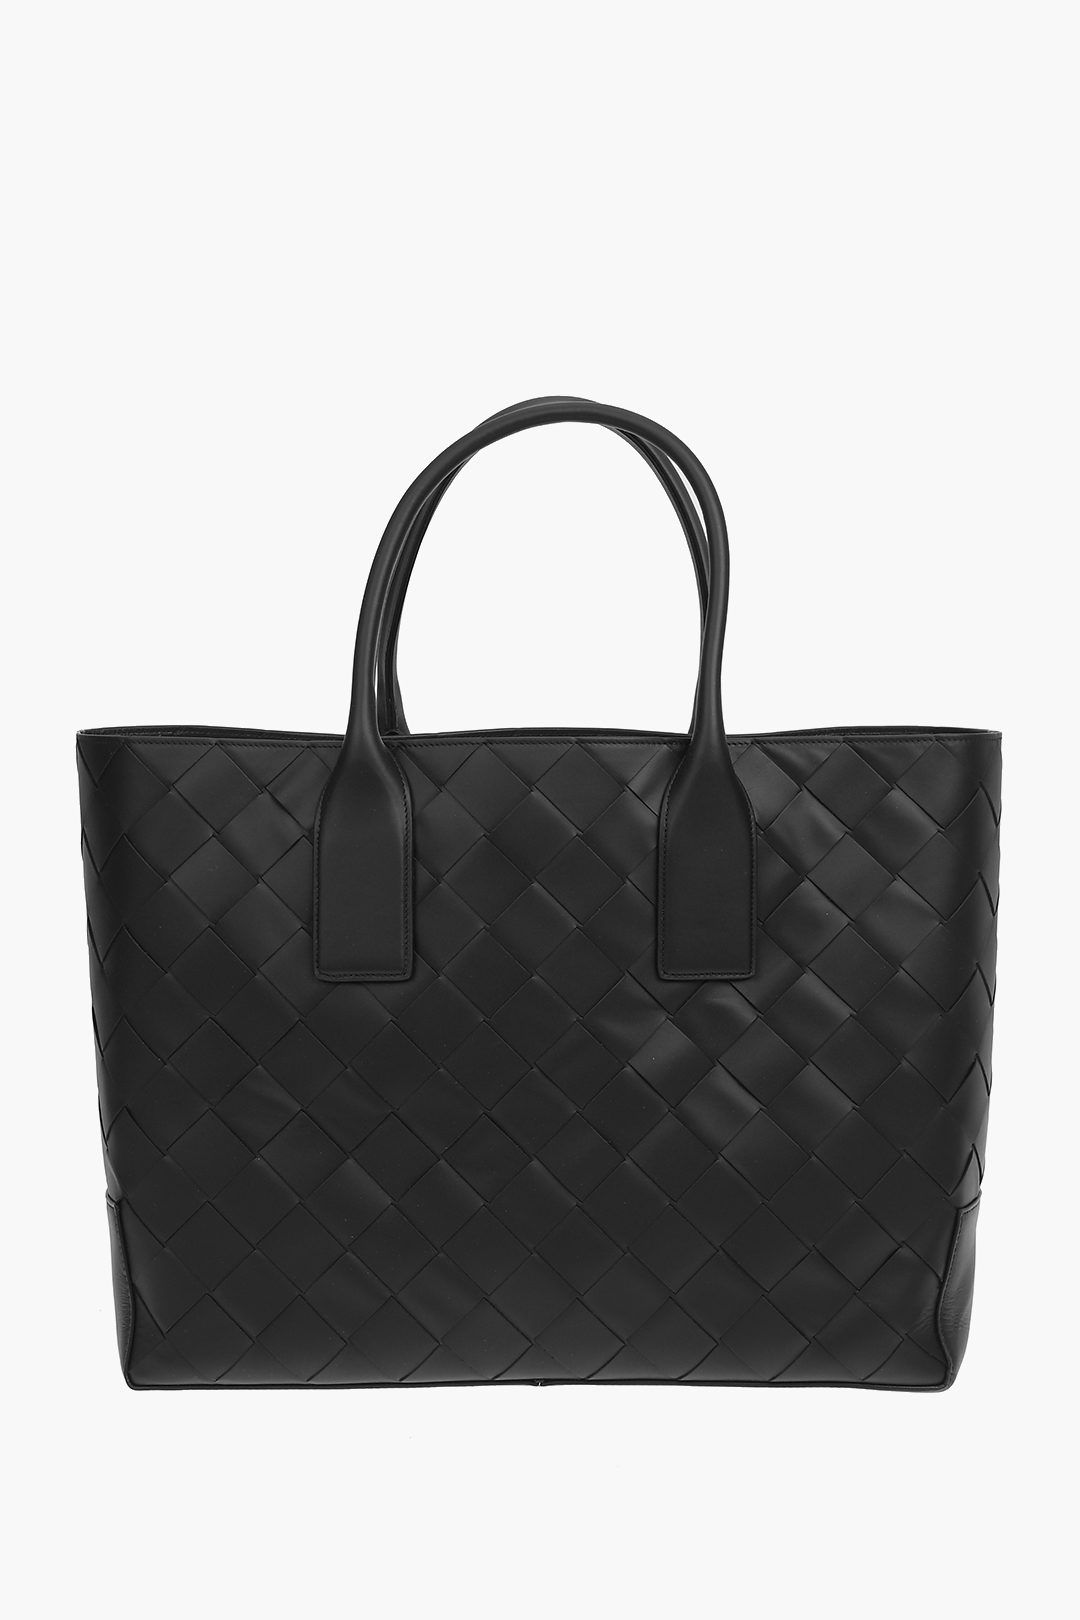 Pre-owned Bottega Veneta Braided Leather Tote Bag In Black